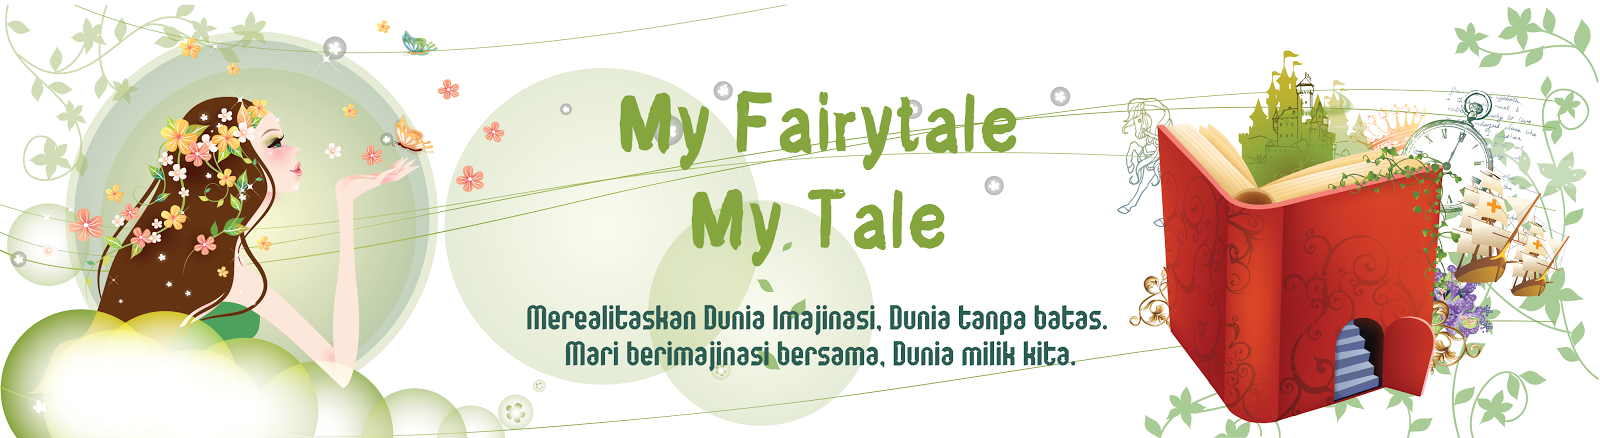 My Fairytale My Tale